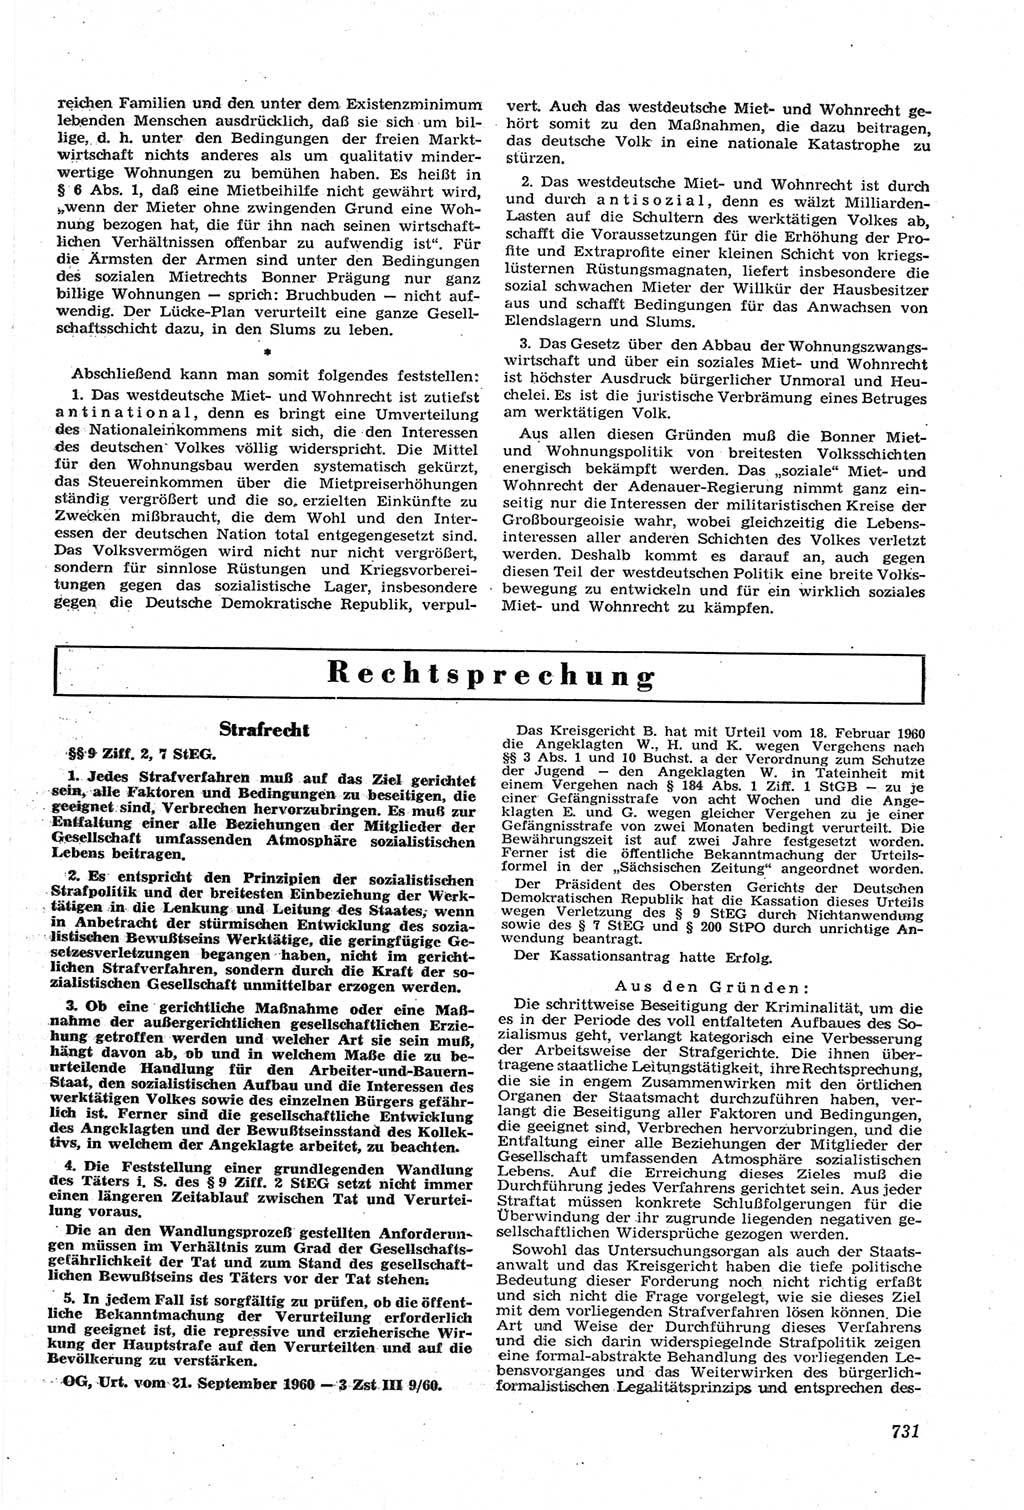 Neue Justiz (NJ), Zeitschrift für Recht und Rechtswissenschaft [Deutsche Demokratische Republik (DDR)], 14. Jahrgang 1960, Seite 731 (NJ DDR 1960, S. 731)